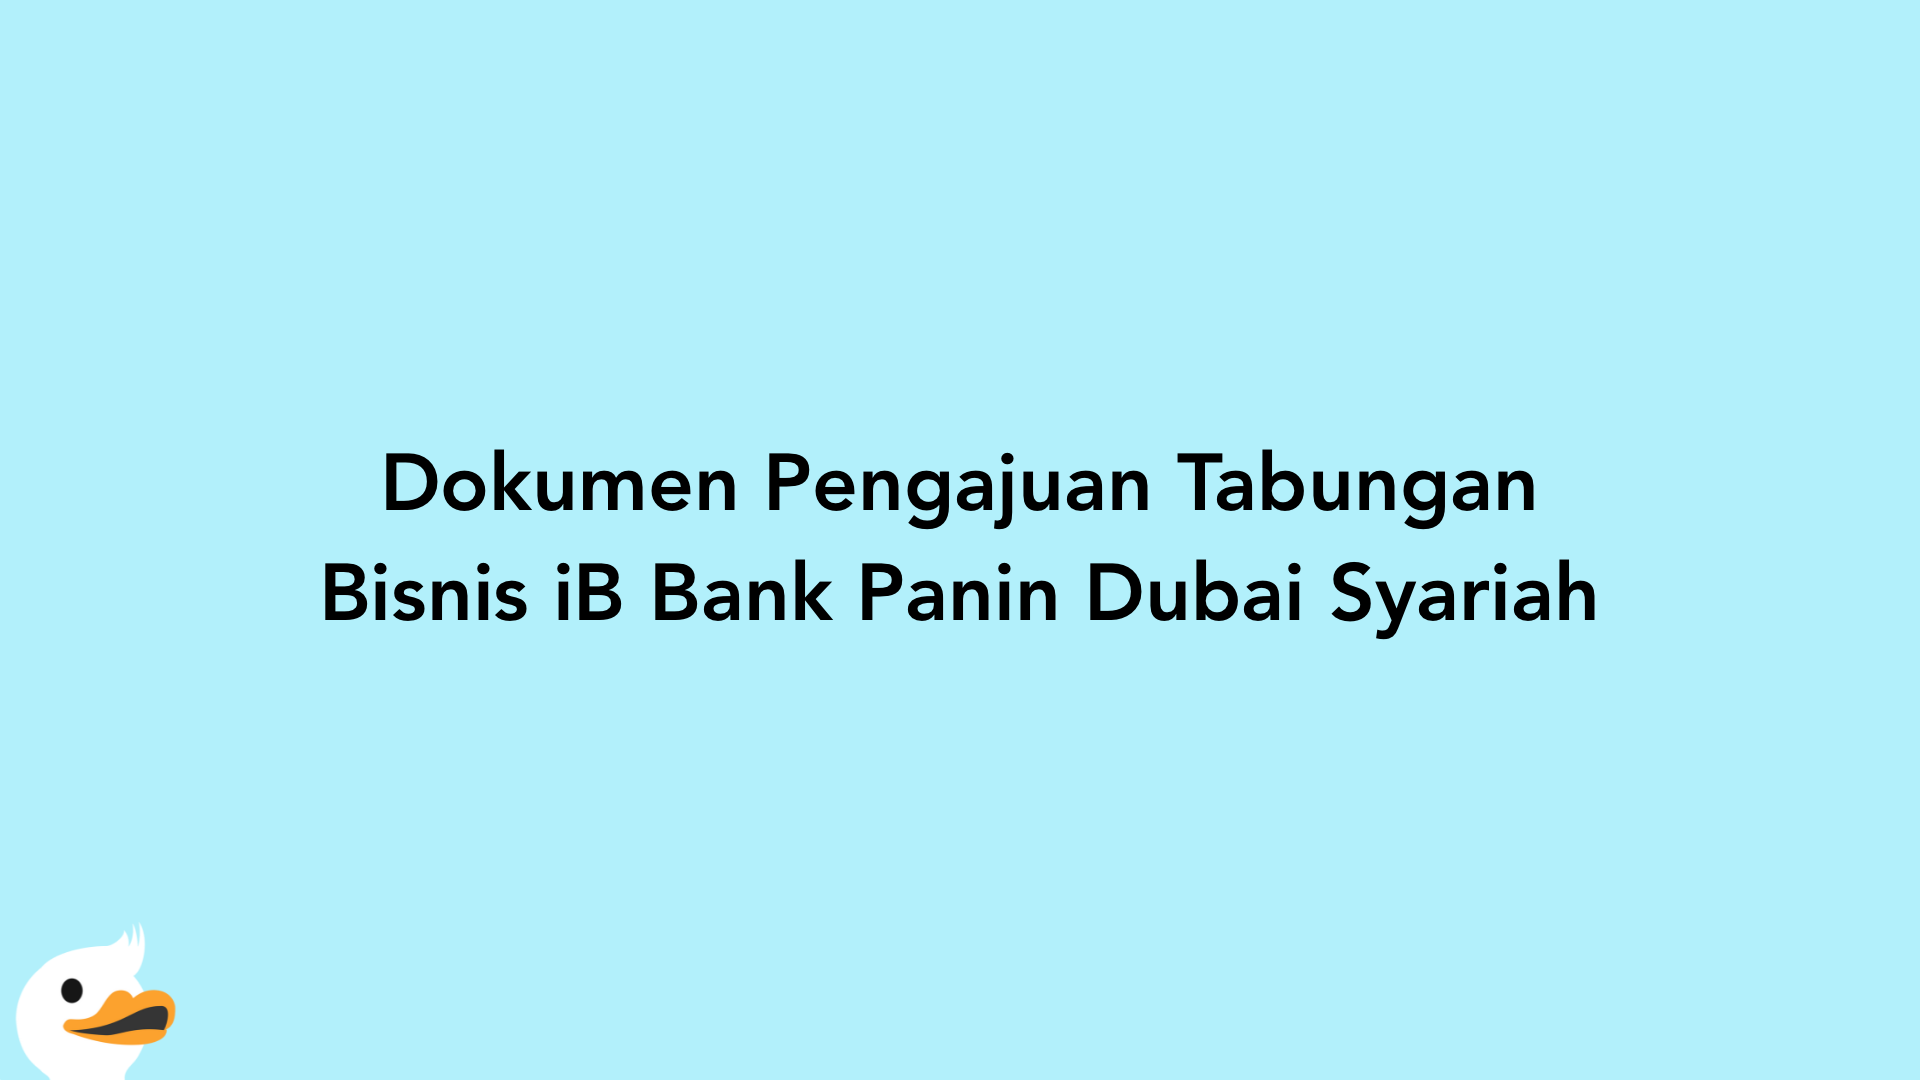 Dokumen Pengajuan Tabungan Bisnis iB Bank Panin Dubai Syariah